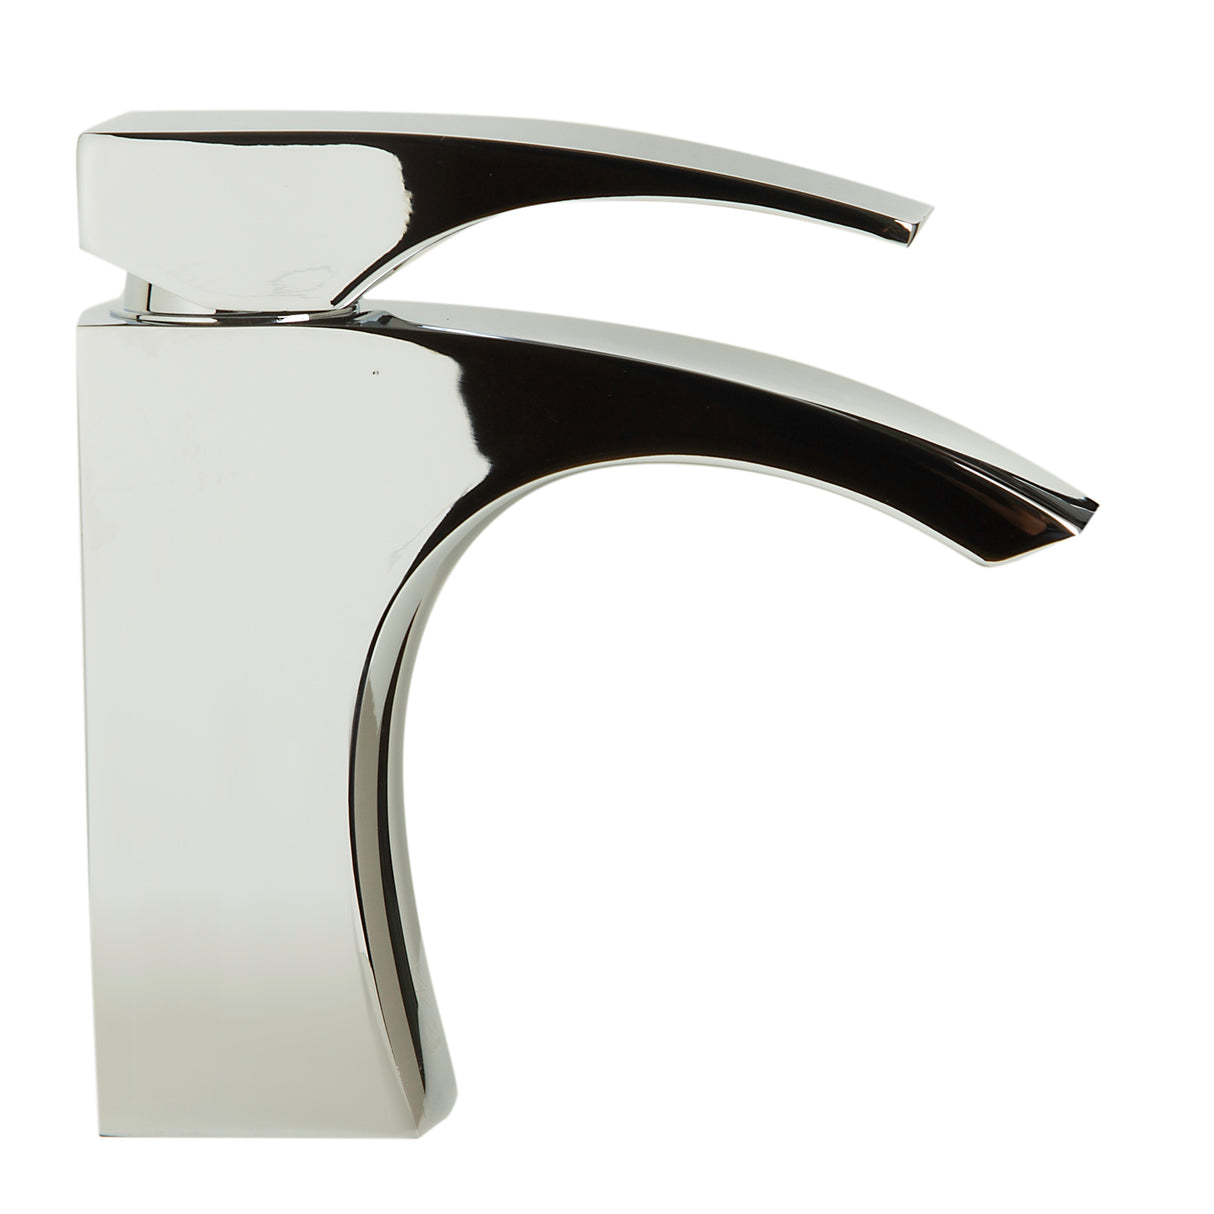 ALFI brand AB1586-PC Polished Chrome Single Lever Bathroom Faucet